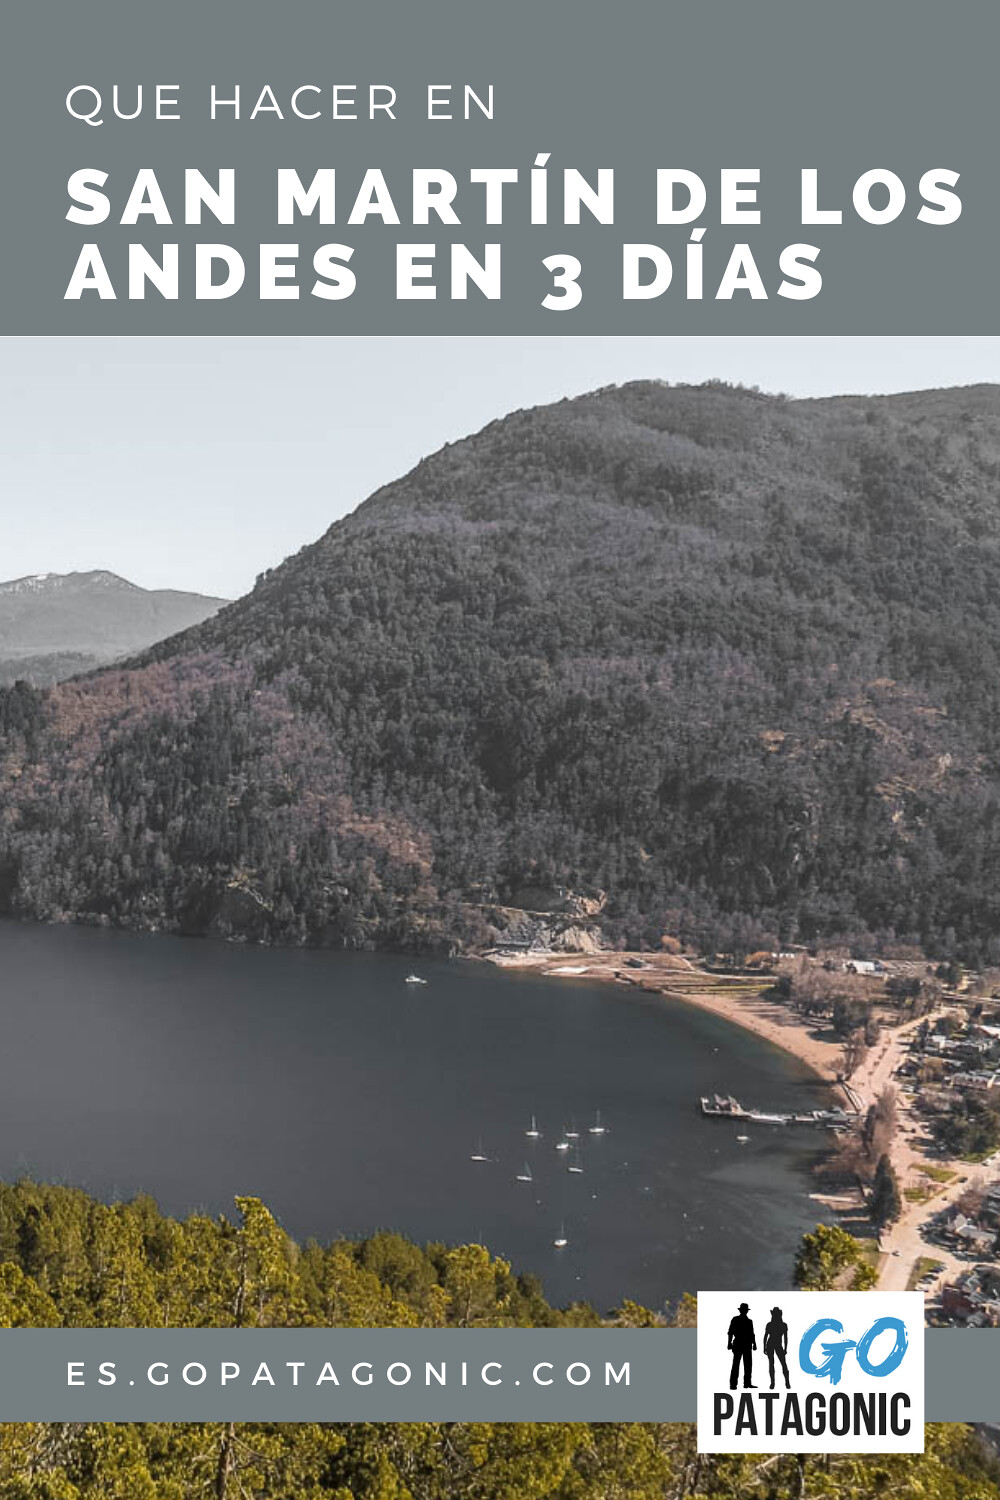 San Martín de los Andes en 3 días, itinerario